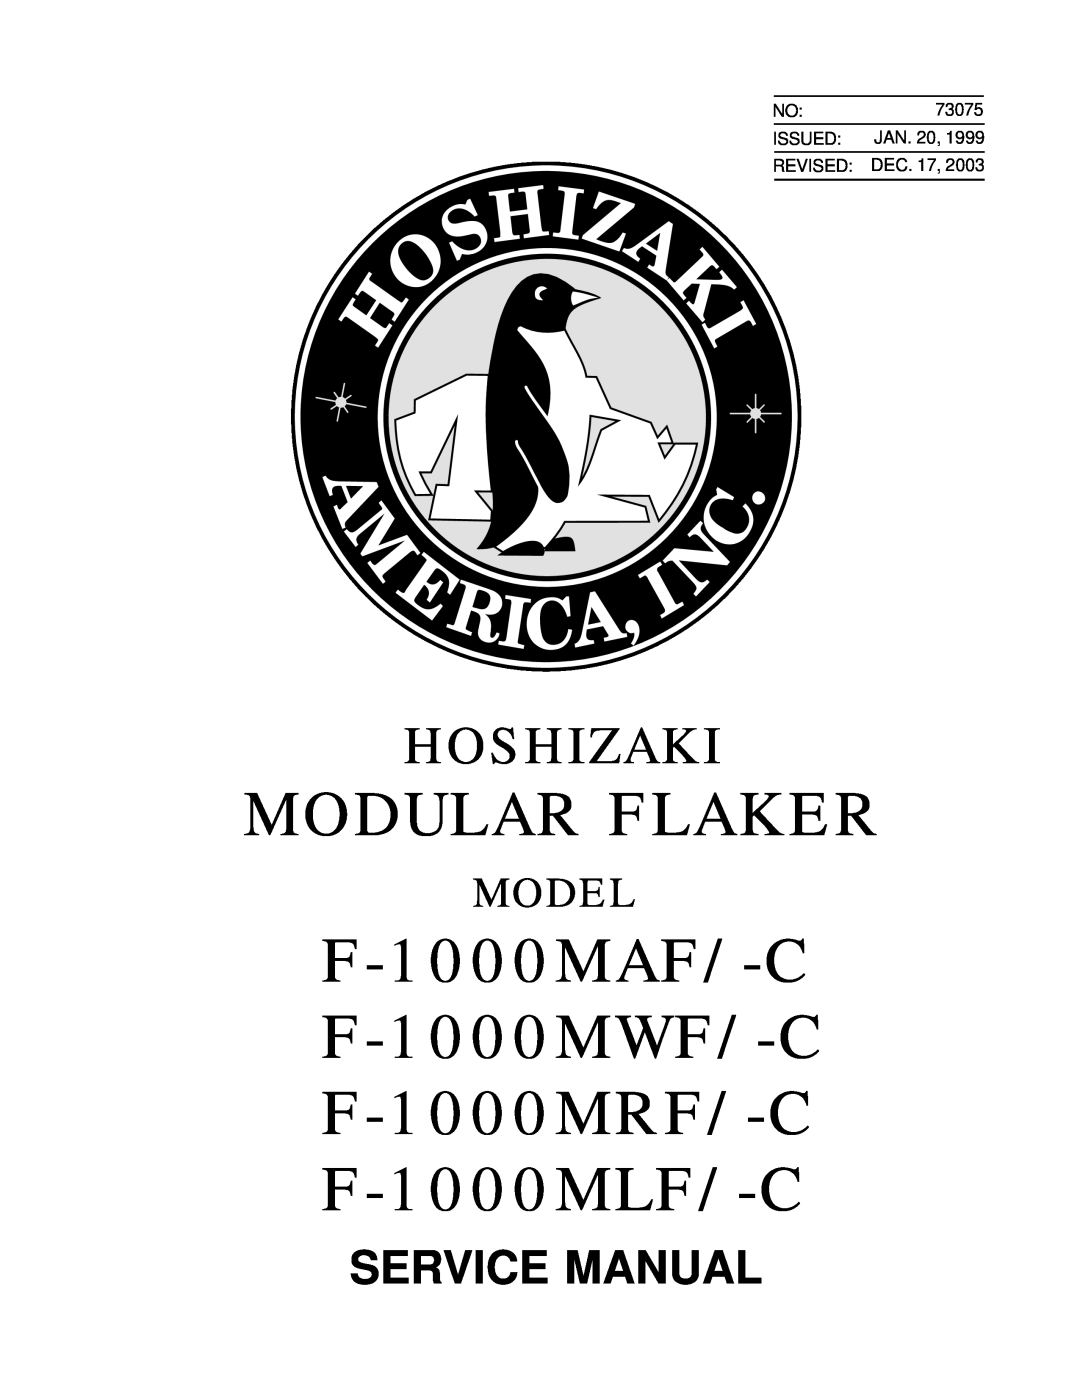 Hoshizaki service manual Modular Flaker, F-1000MAF/-C F-1000MWF/-C F-1000MRF/-C F-1000MLF/-C, Hoshizaki, Model 